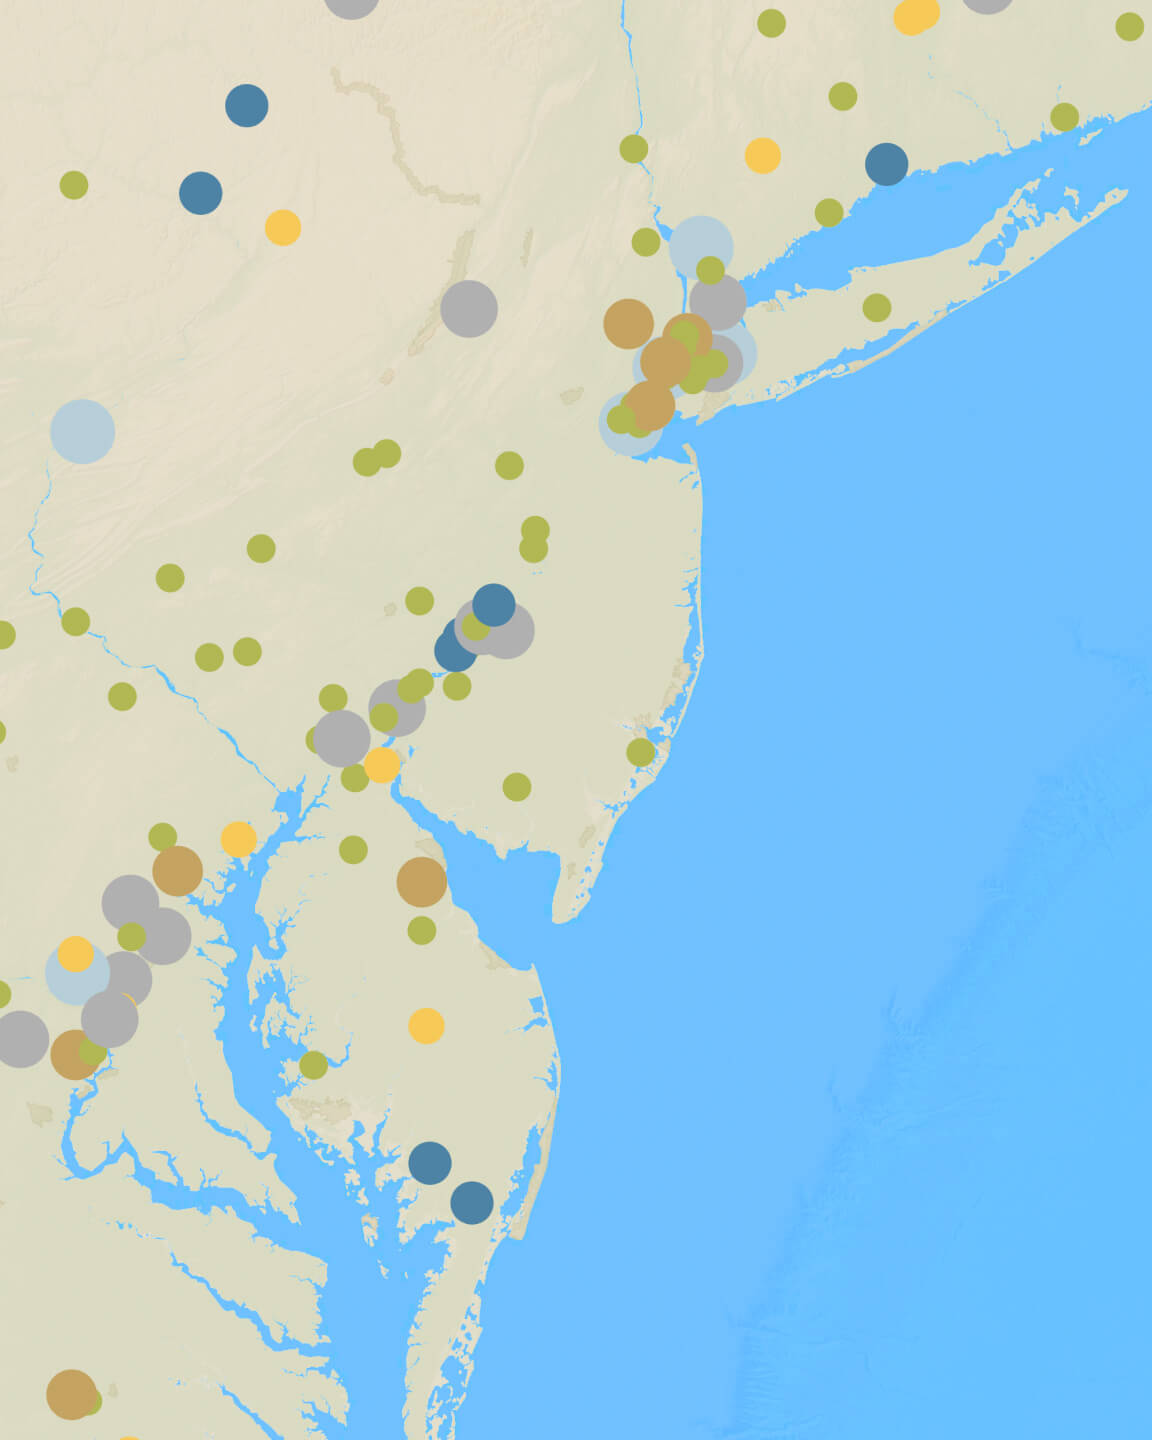 Mapa representando a qualidade do ar ao longo da costa leste dos EUA com representações de densidade circular